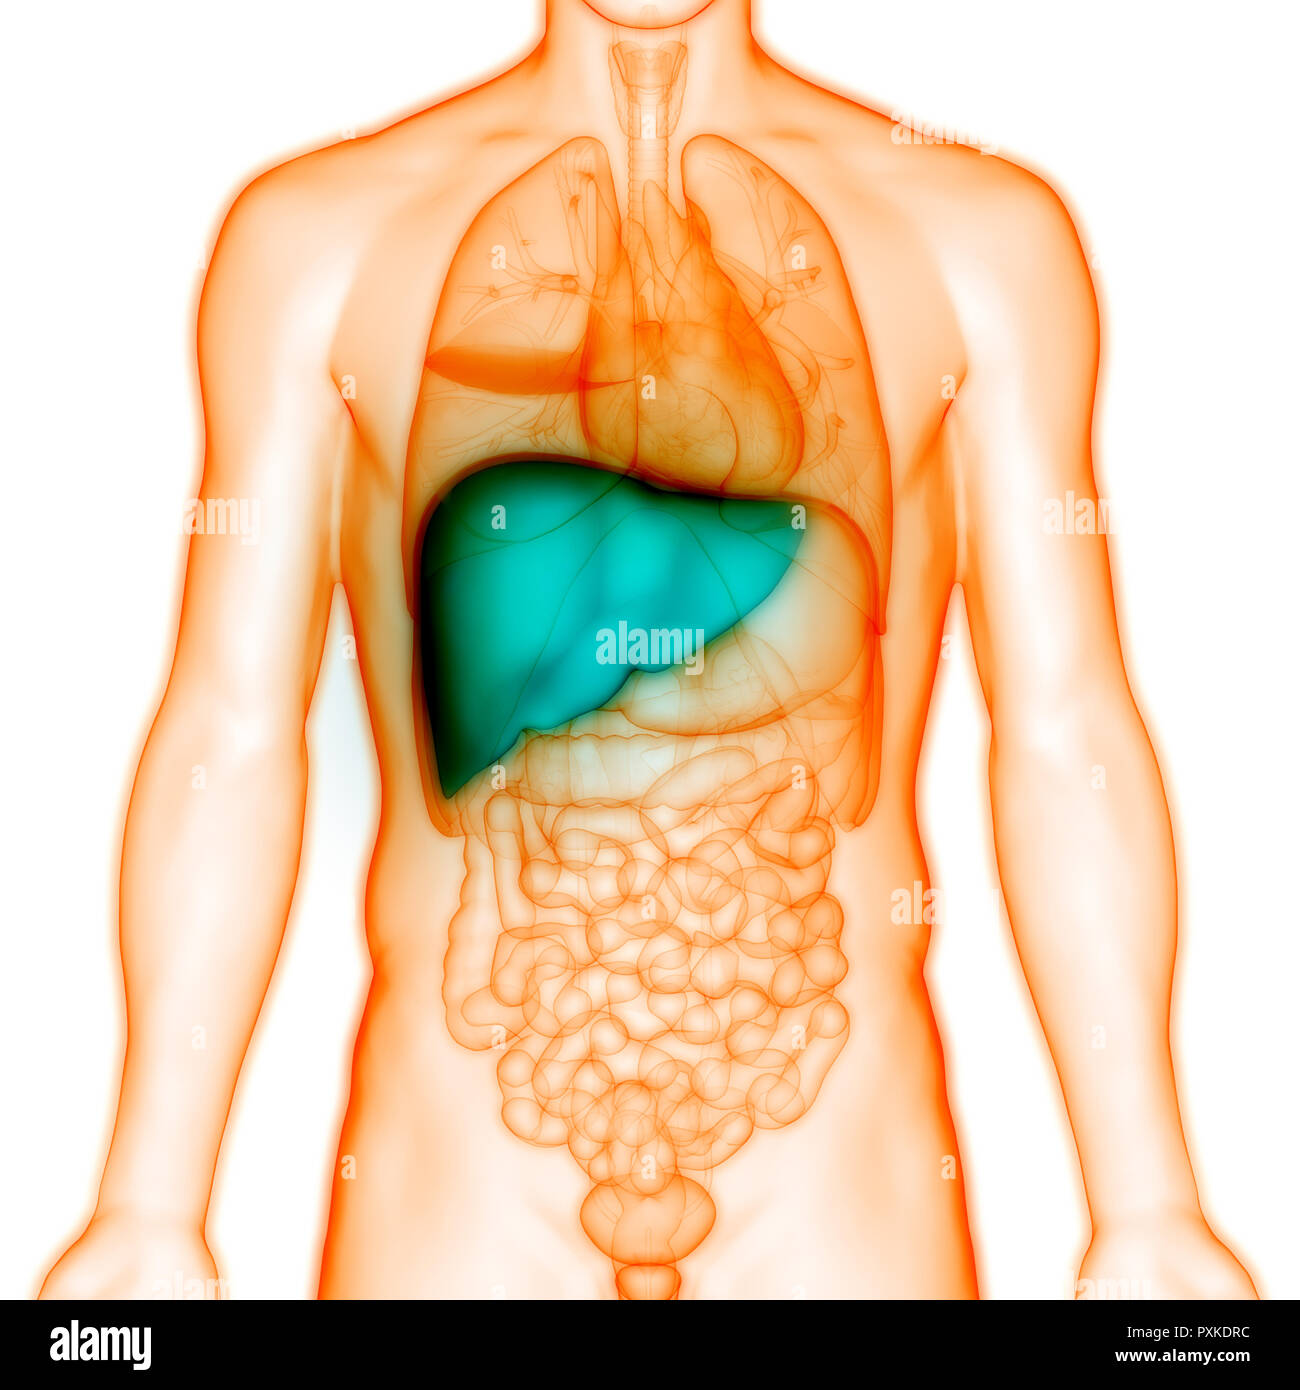 Печень на теле человека. Расположение печени в организме. Внутренние органы человека печень. Анатомическое расположение печени.